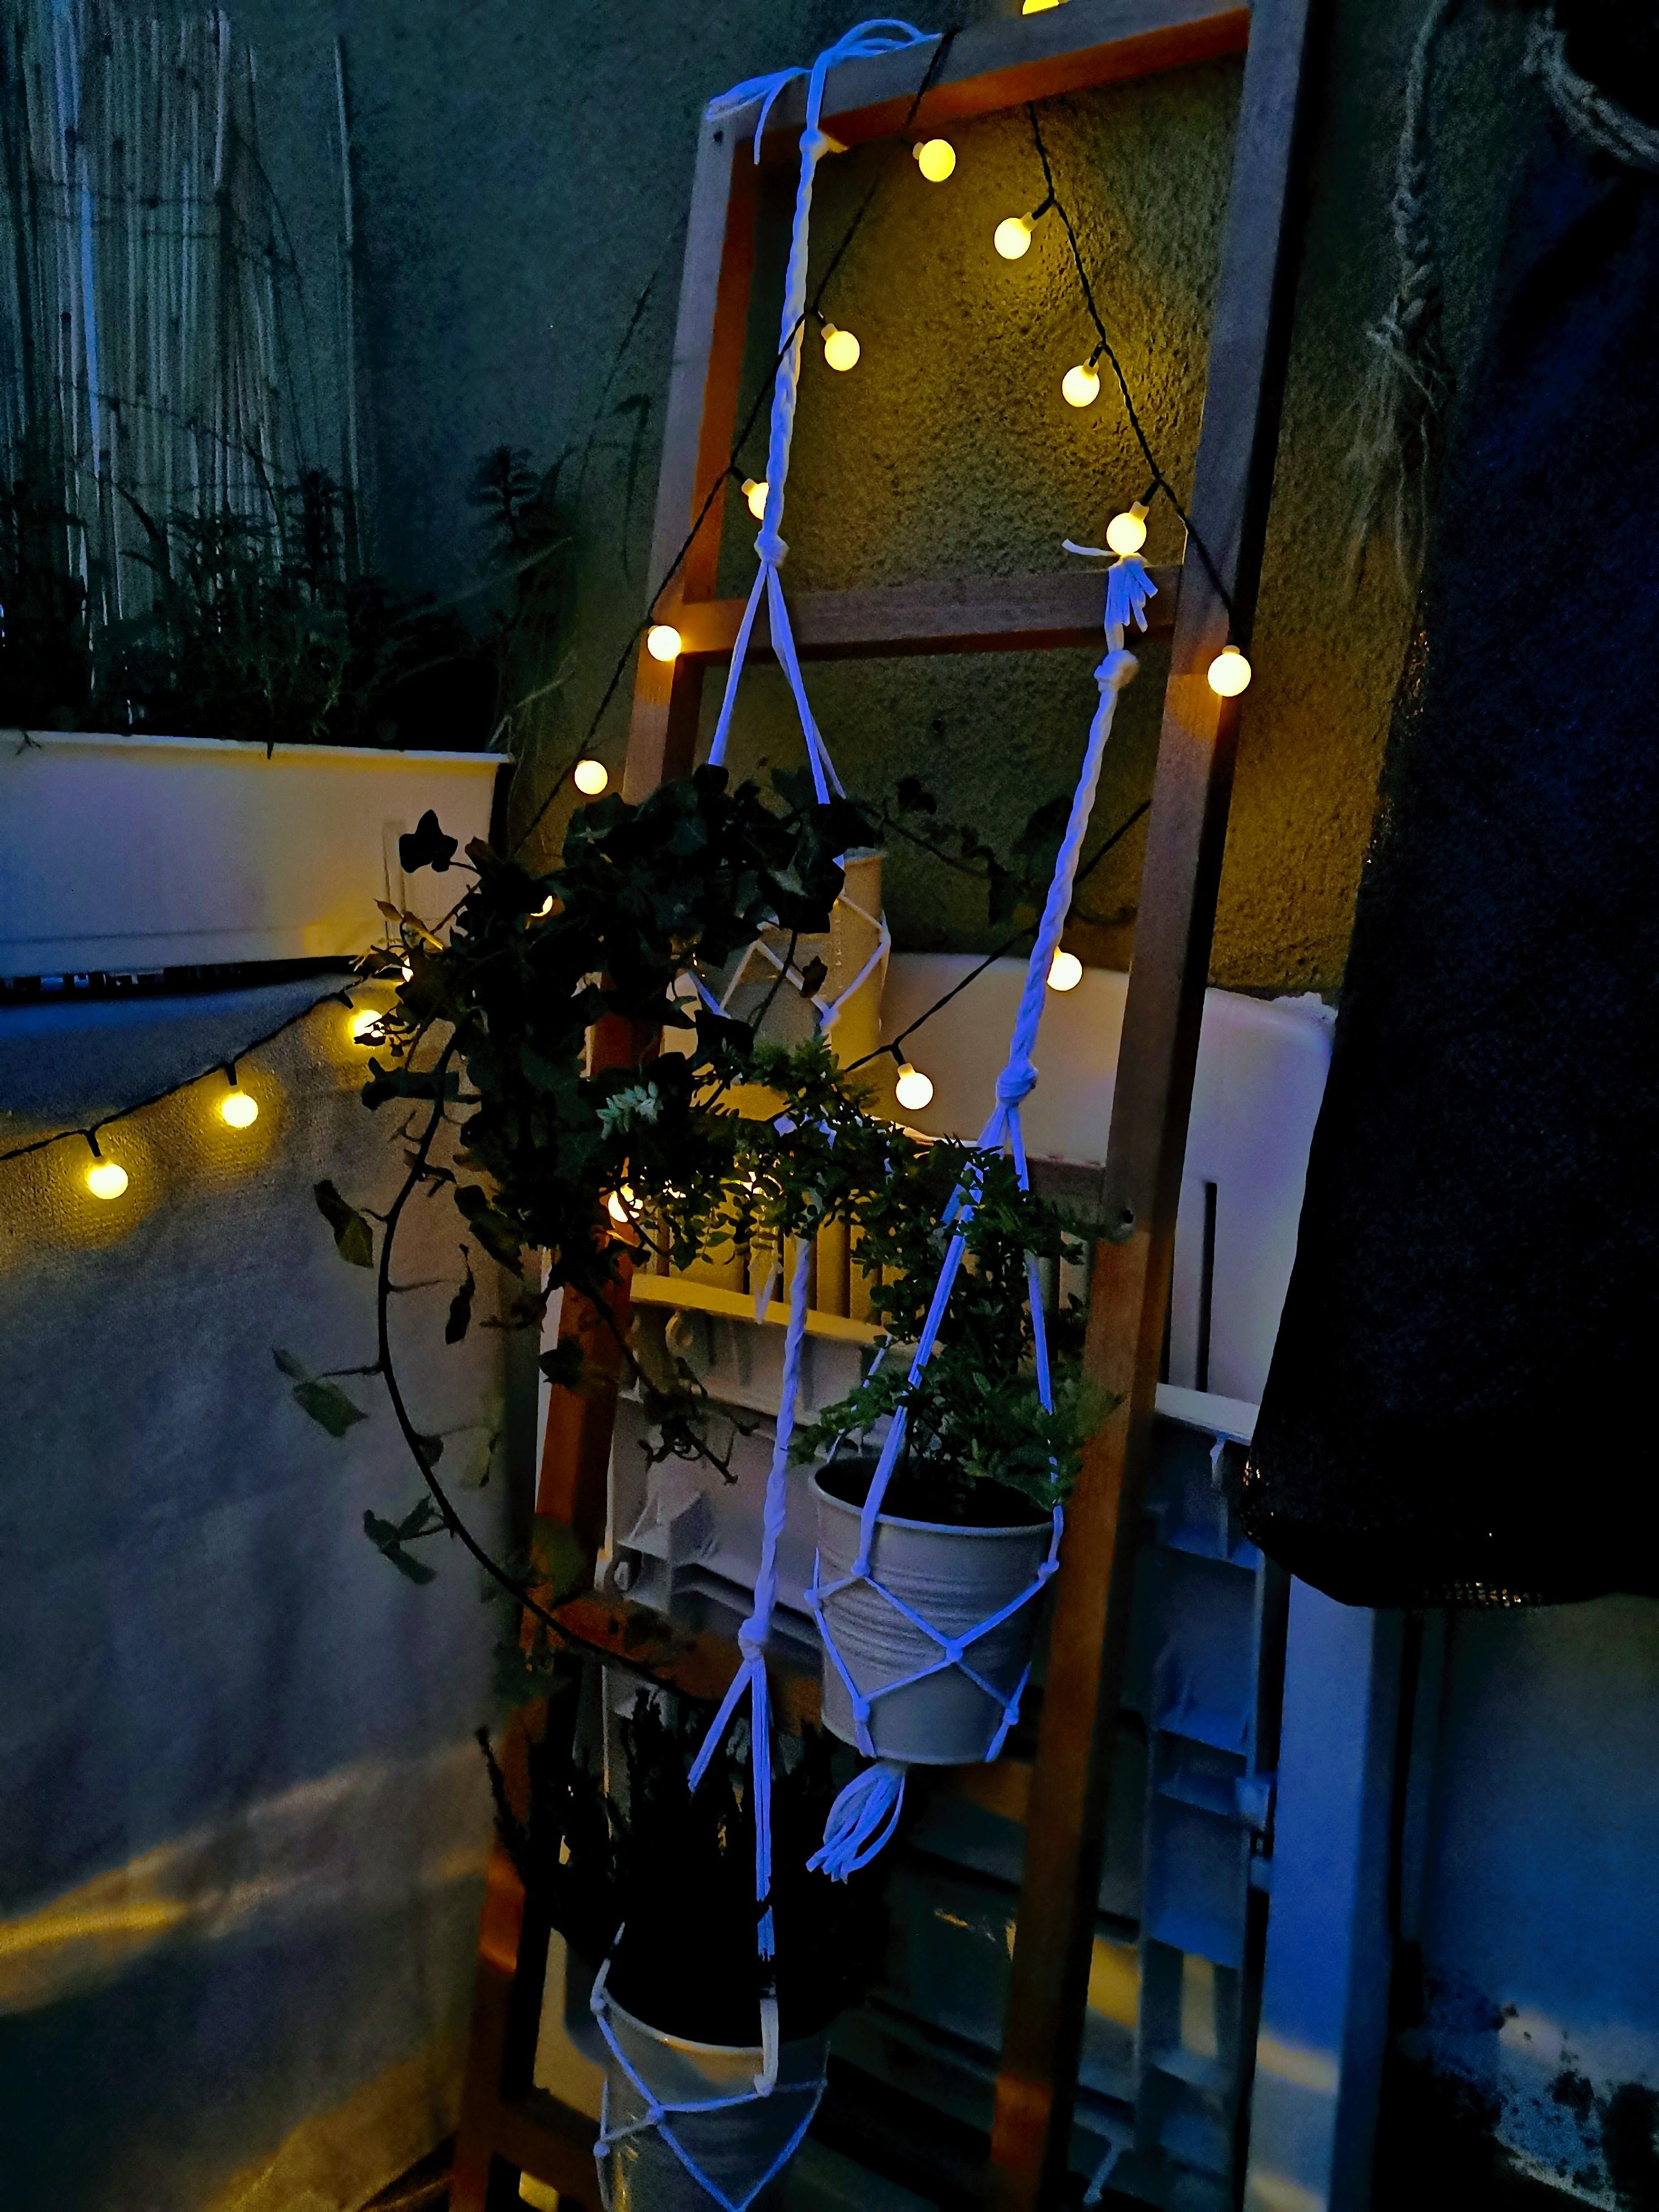 Gestern Abend auf Balkonien. Mit DIY und schönen Lichtern. Und dem ersten Mückenstich. #balkon #diy